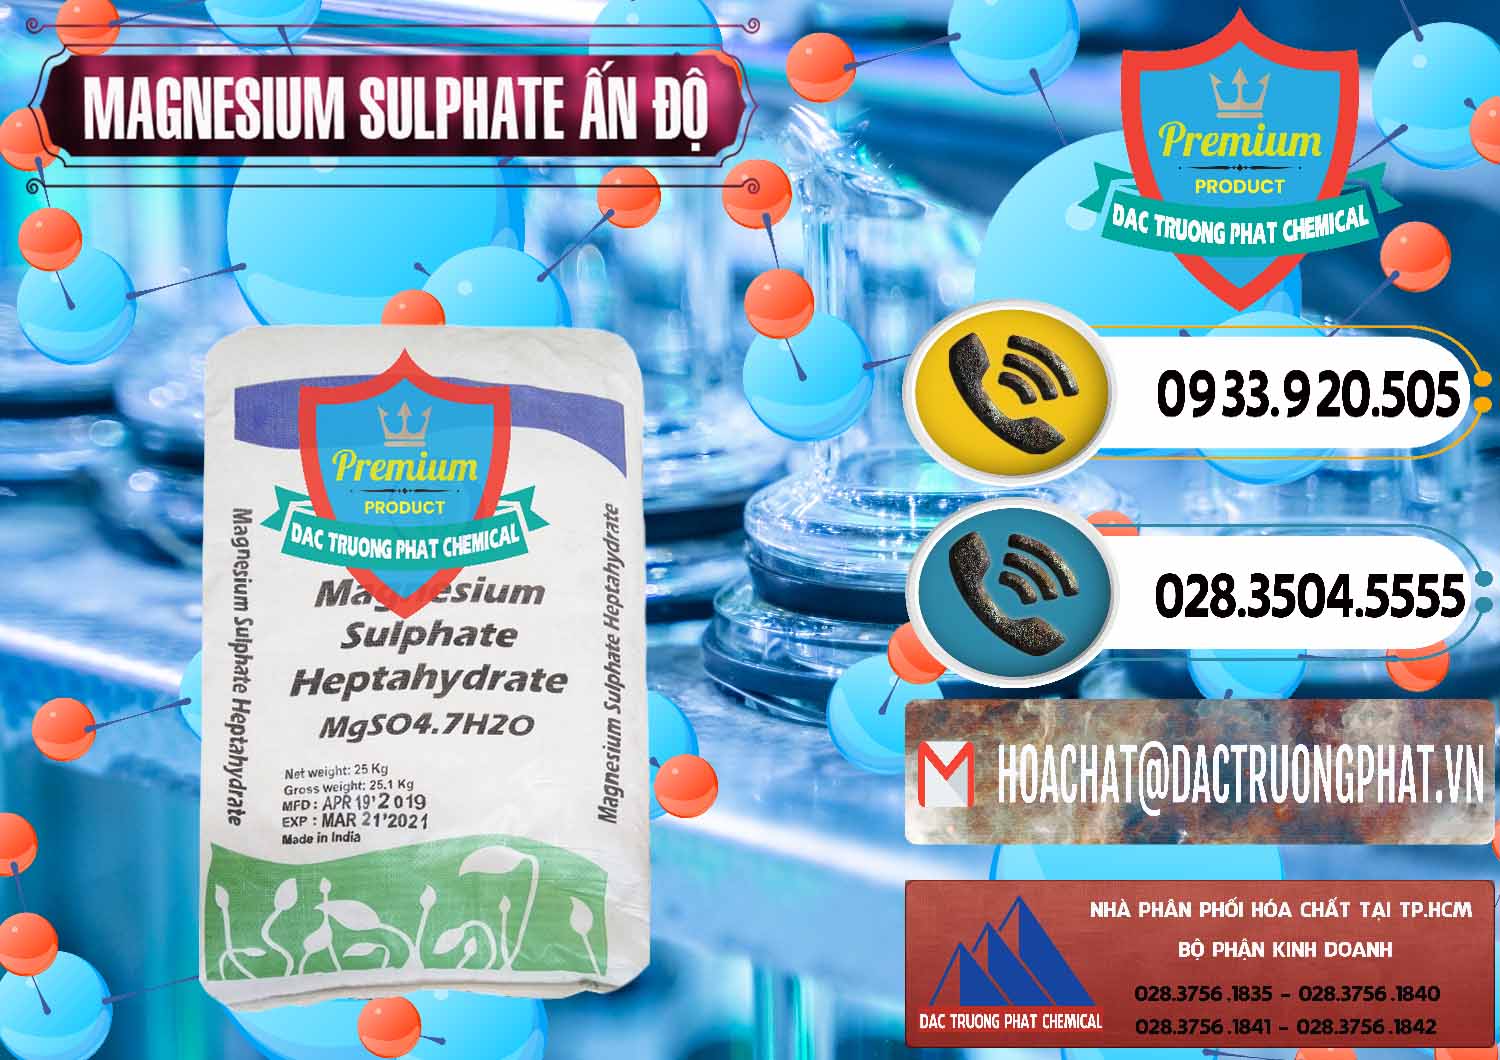 Nhà nhập khẩu & bán MGSO4.7H2O – Magnesium Sulphate Heptahydrate Ấn Độ India - 0362 - Cty cung cấp _ phân phối hóa chất tại TP.HCM - hoachatdetnhuom.vn